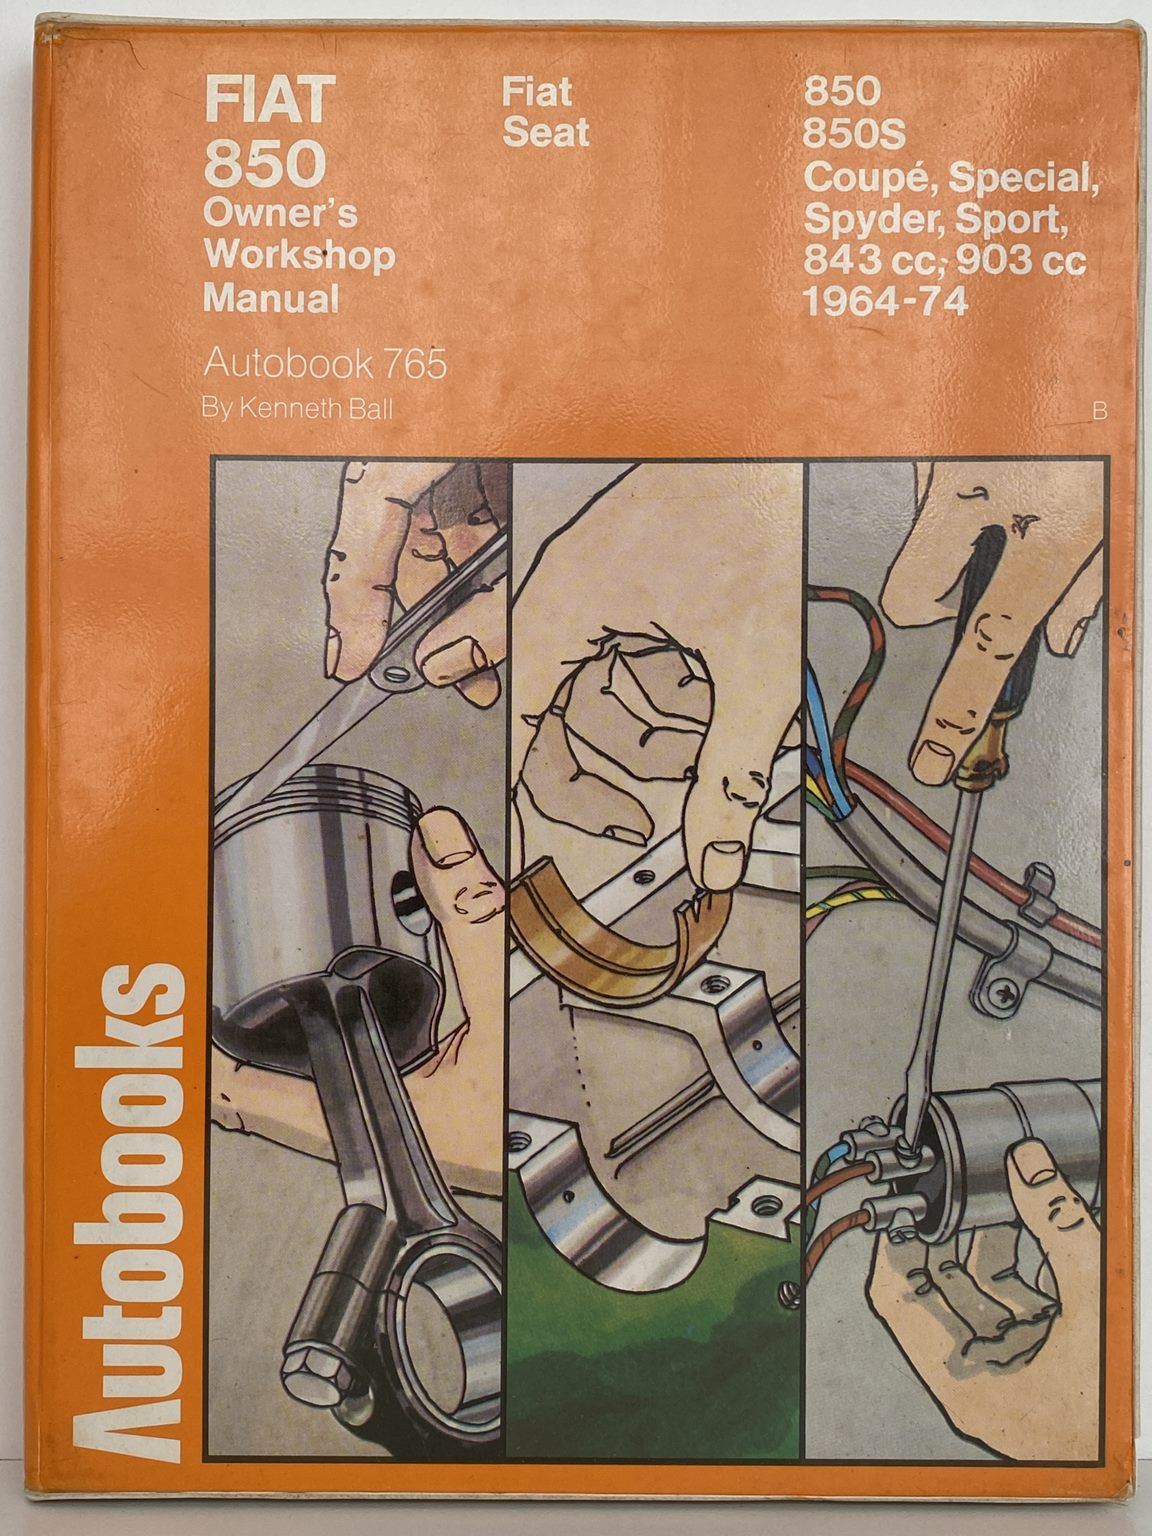 FAIT 850 Owners Workshop Manual / Autobook 765